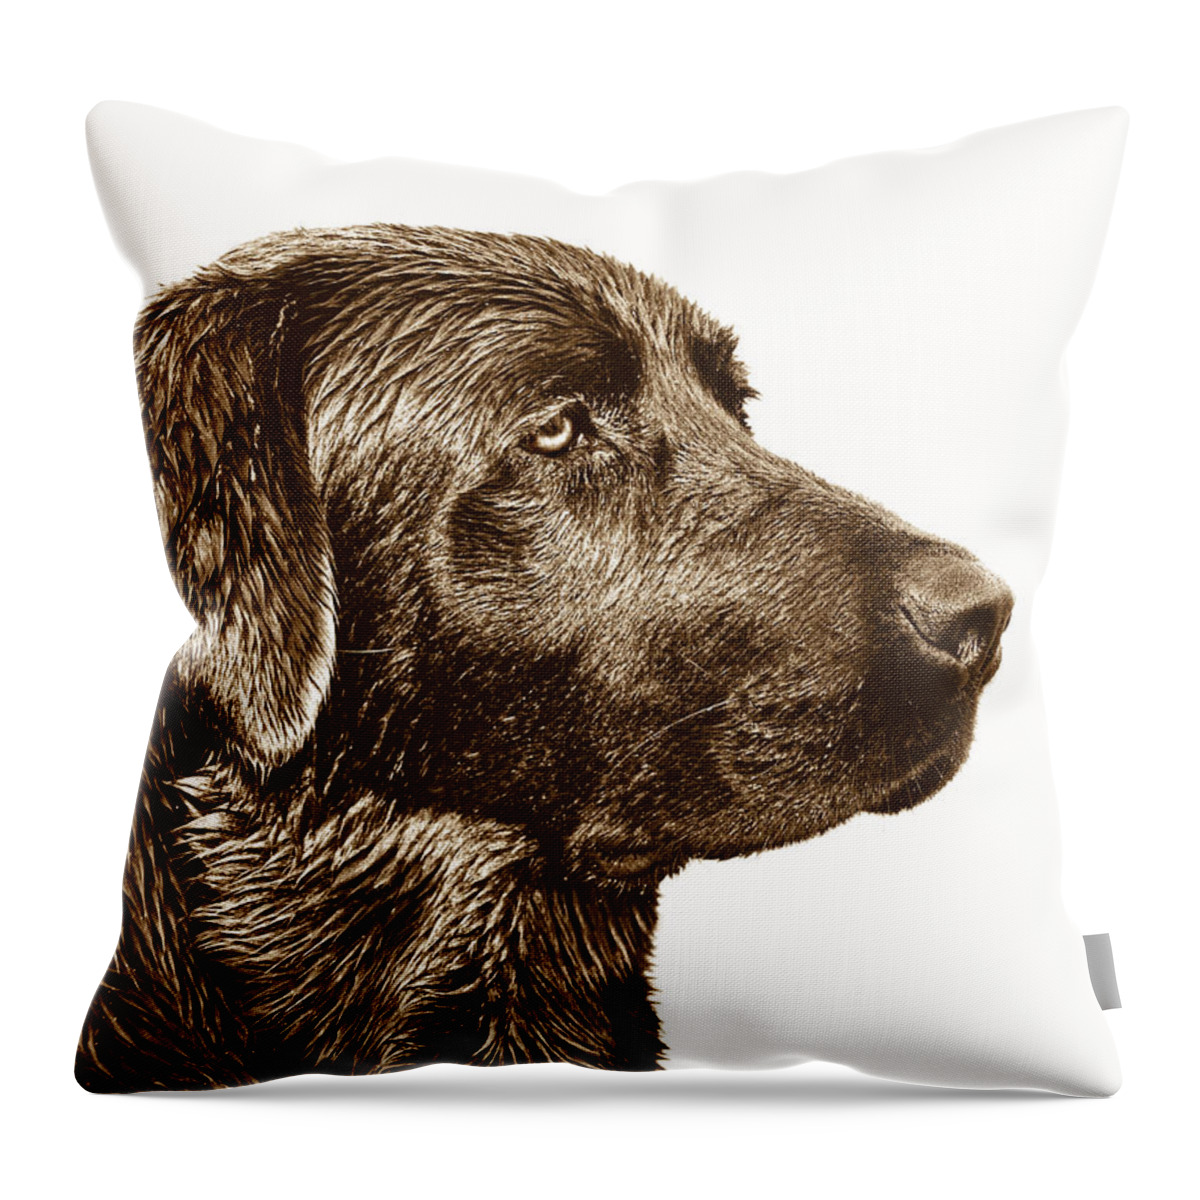 Labrador Retriever Throw Pillow featuring the photograph Chocolate Labrador Retriever by Jennie Marie Schell